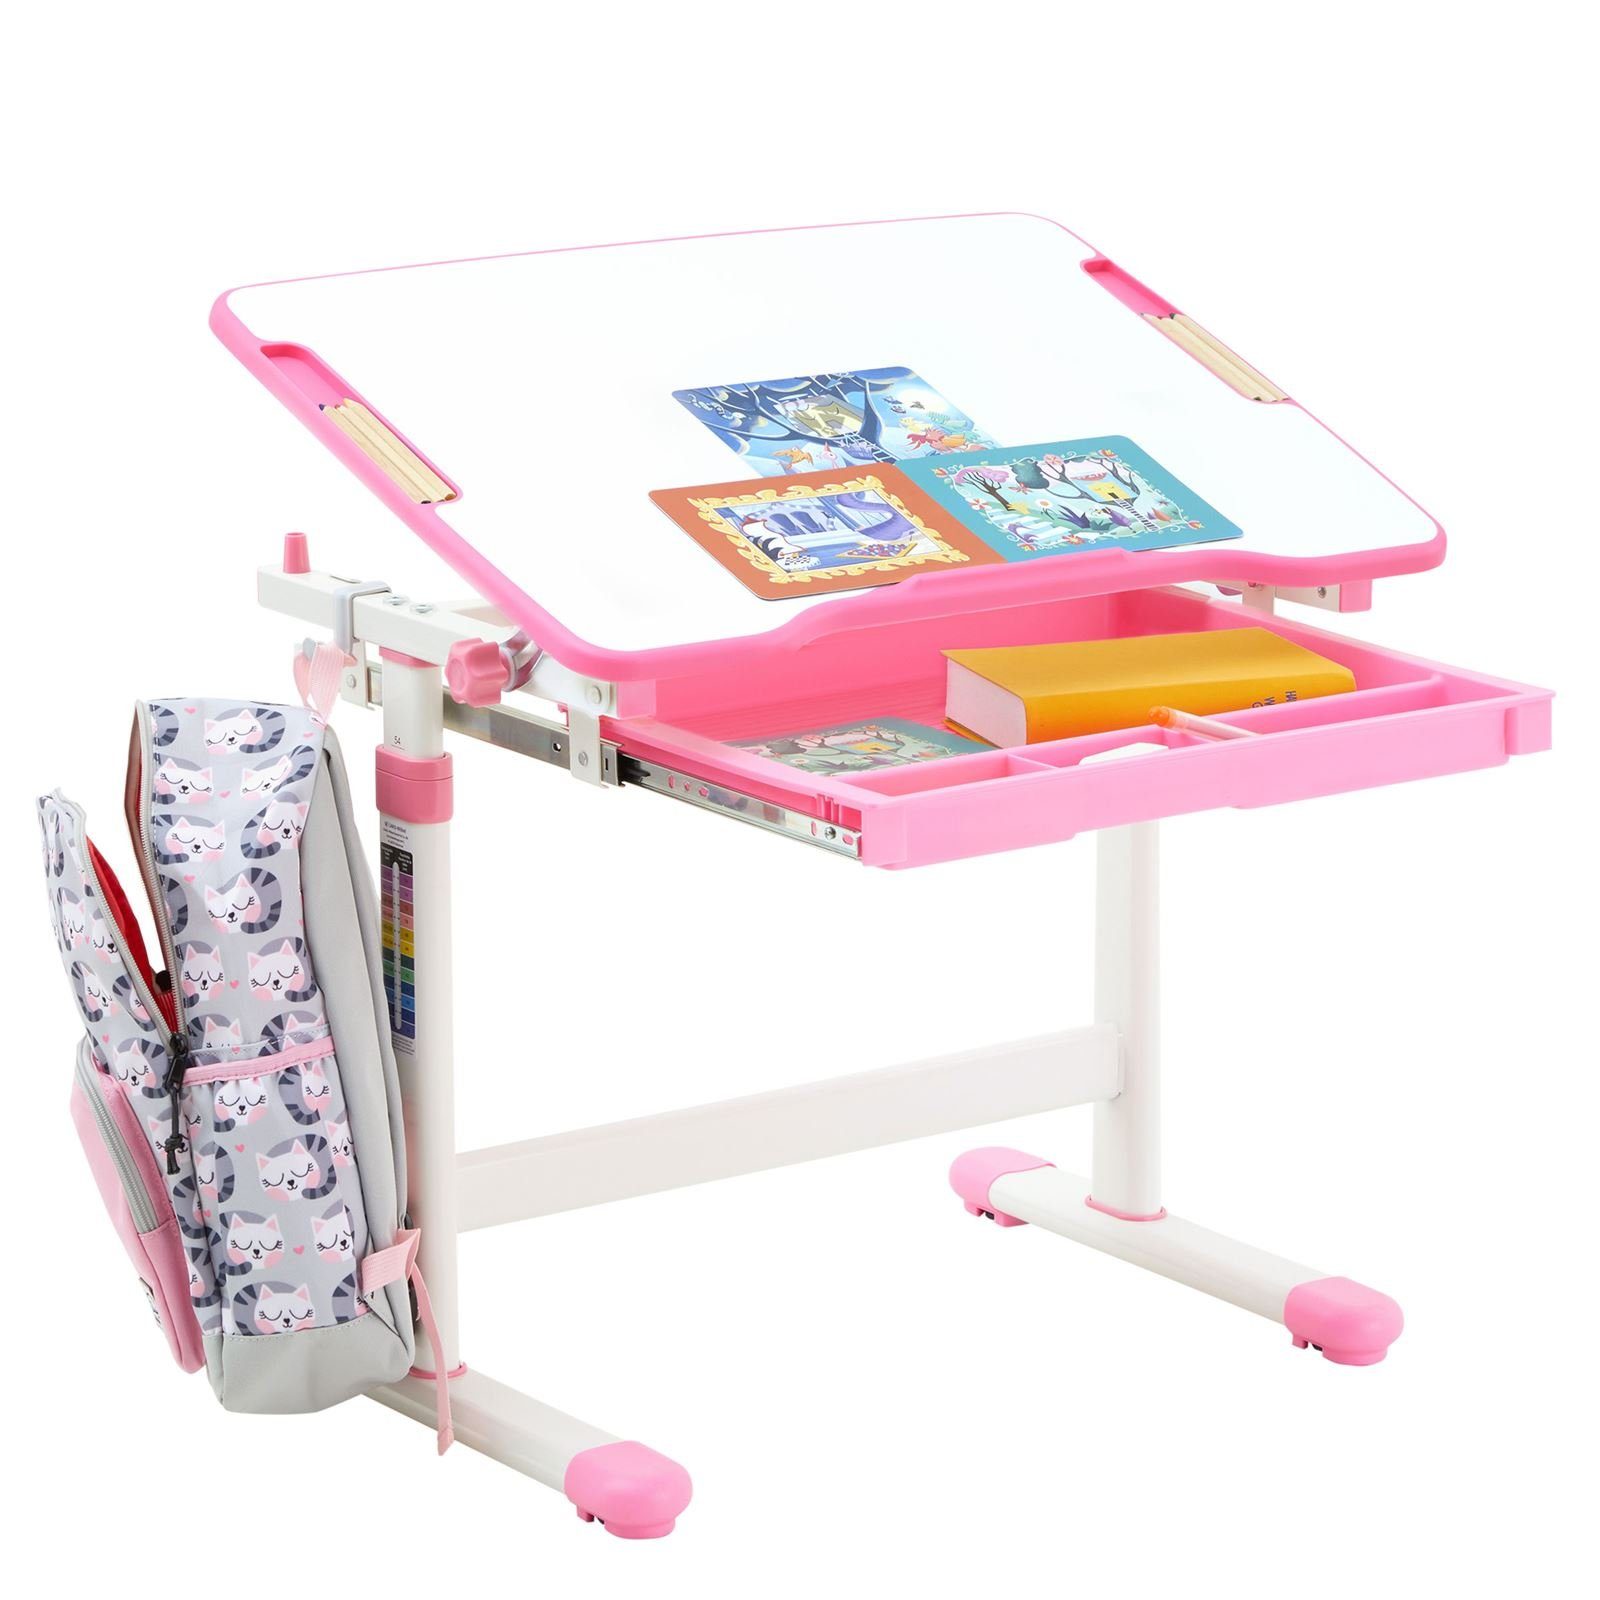 CARO-Möbel Kinderschreibtisch Kin weiß/rosa neigbar höhenverstellbar VITA, Kinderschreibtisch Schreibtisch